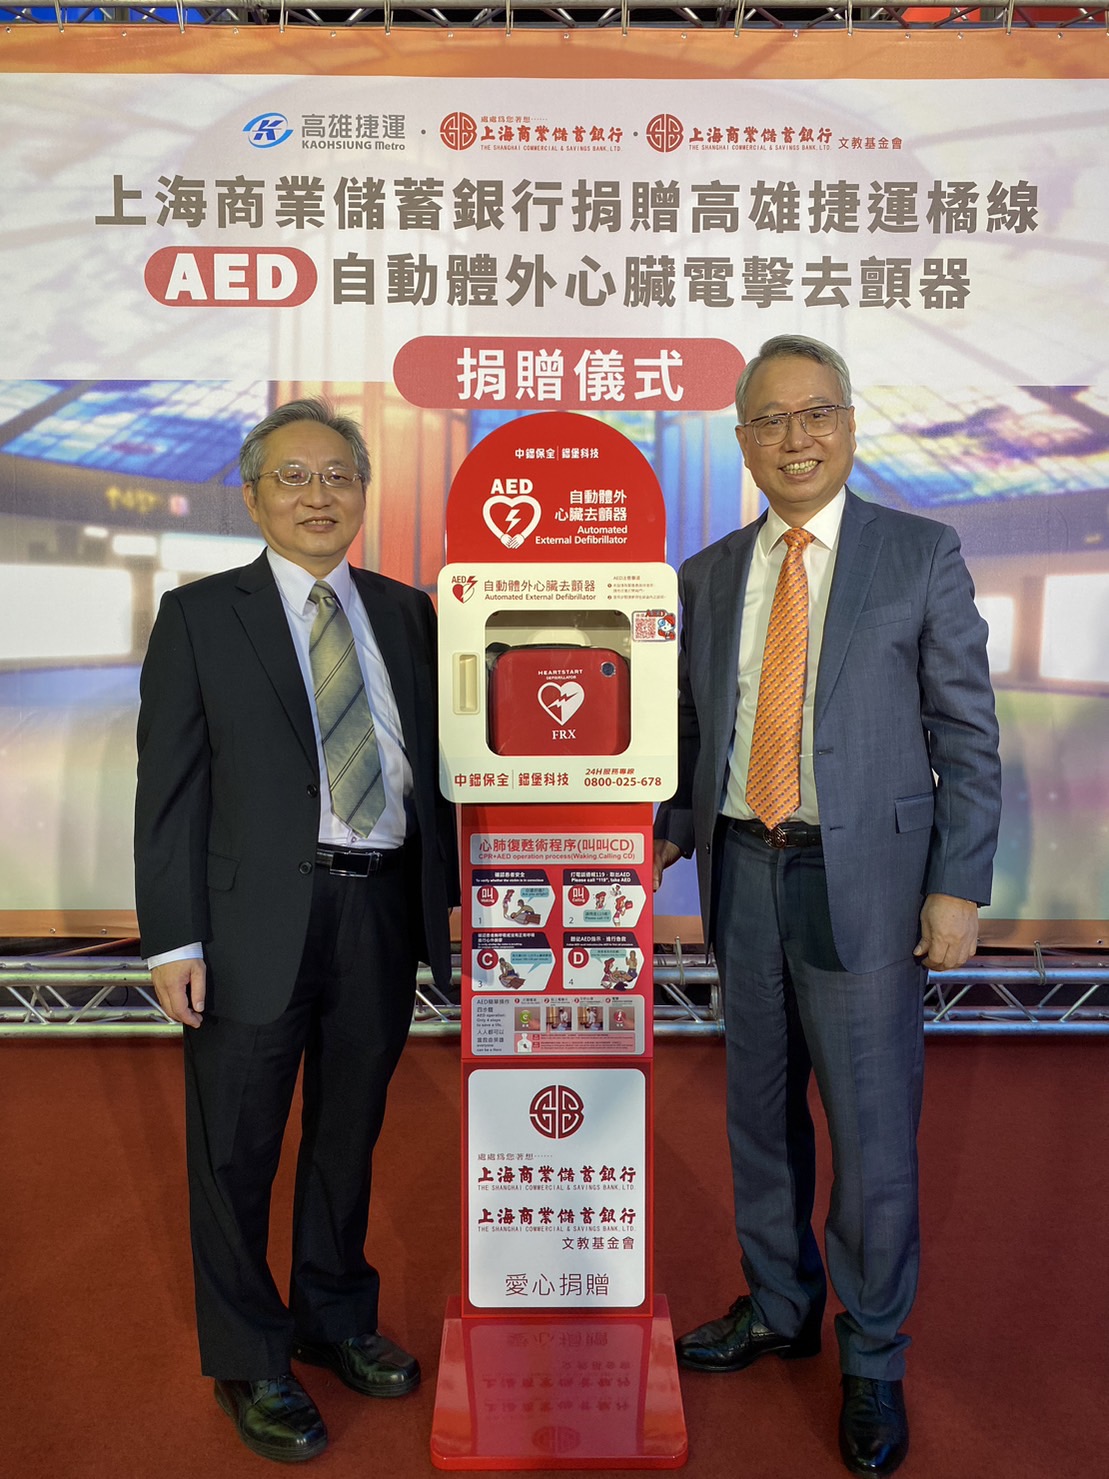 開新視窗-The SCSB and the SCSB Cultural & Education Foundation jointly donated several Automated External Defibrillators (AED) for the Orange Line of the Kaohsiung MRT.